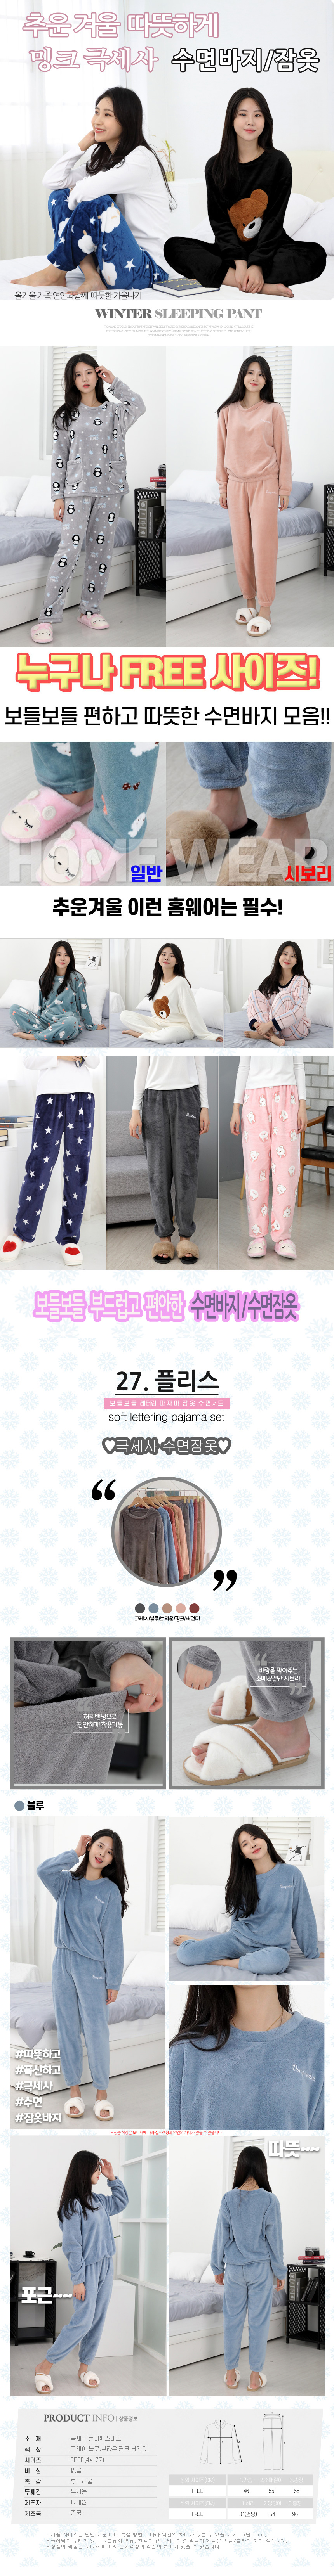 sleeping_pajamas_set_27_02.jpg